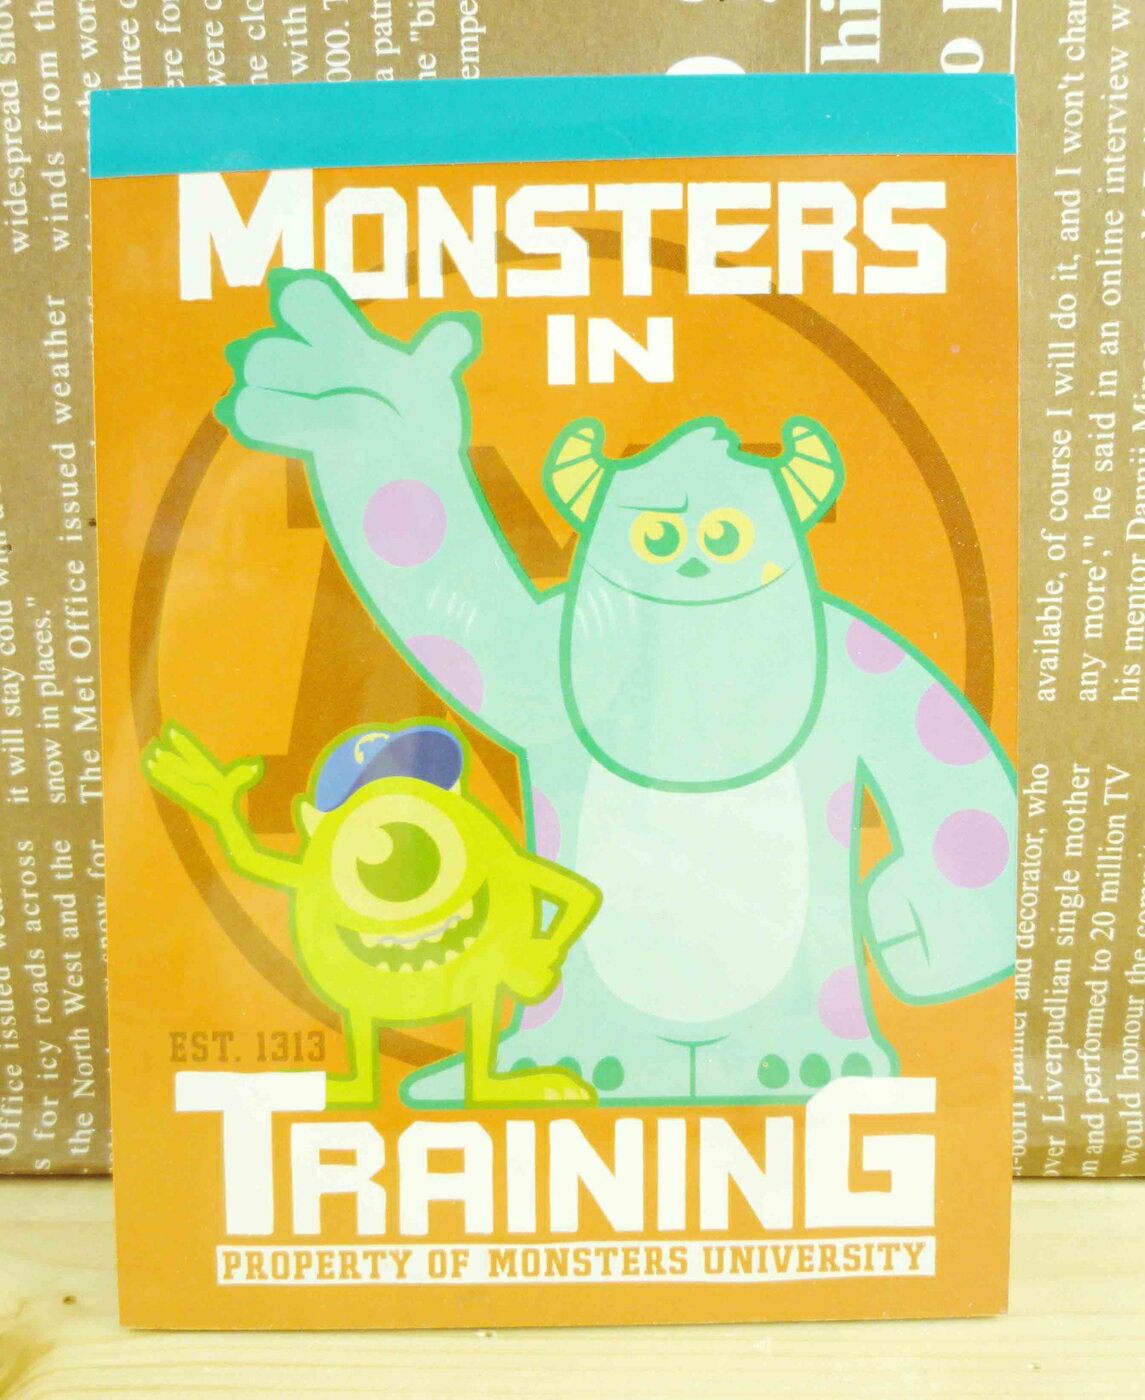 【震撼精品百貨】Monsters University 怪獸大學 便條本-大眼仔圖案-橘色 震撼日式精品百貨